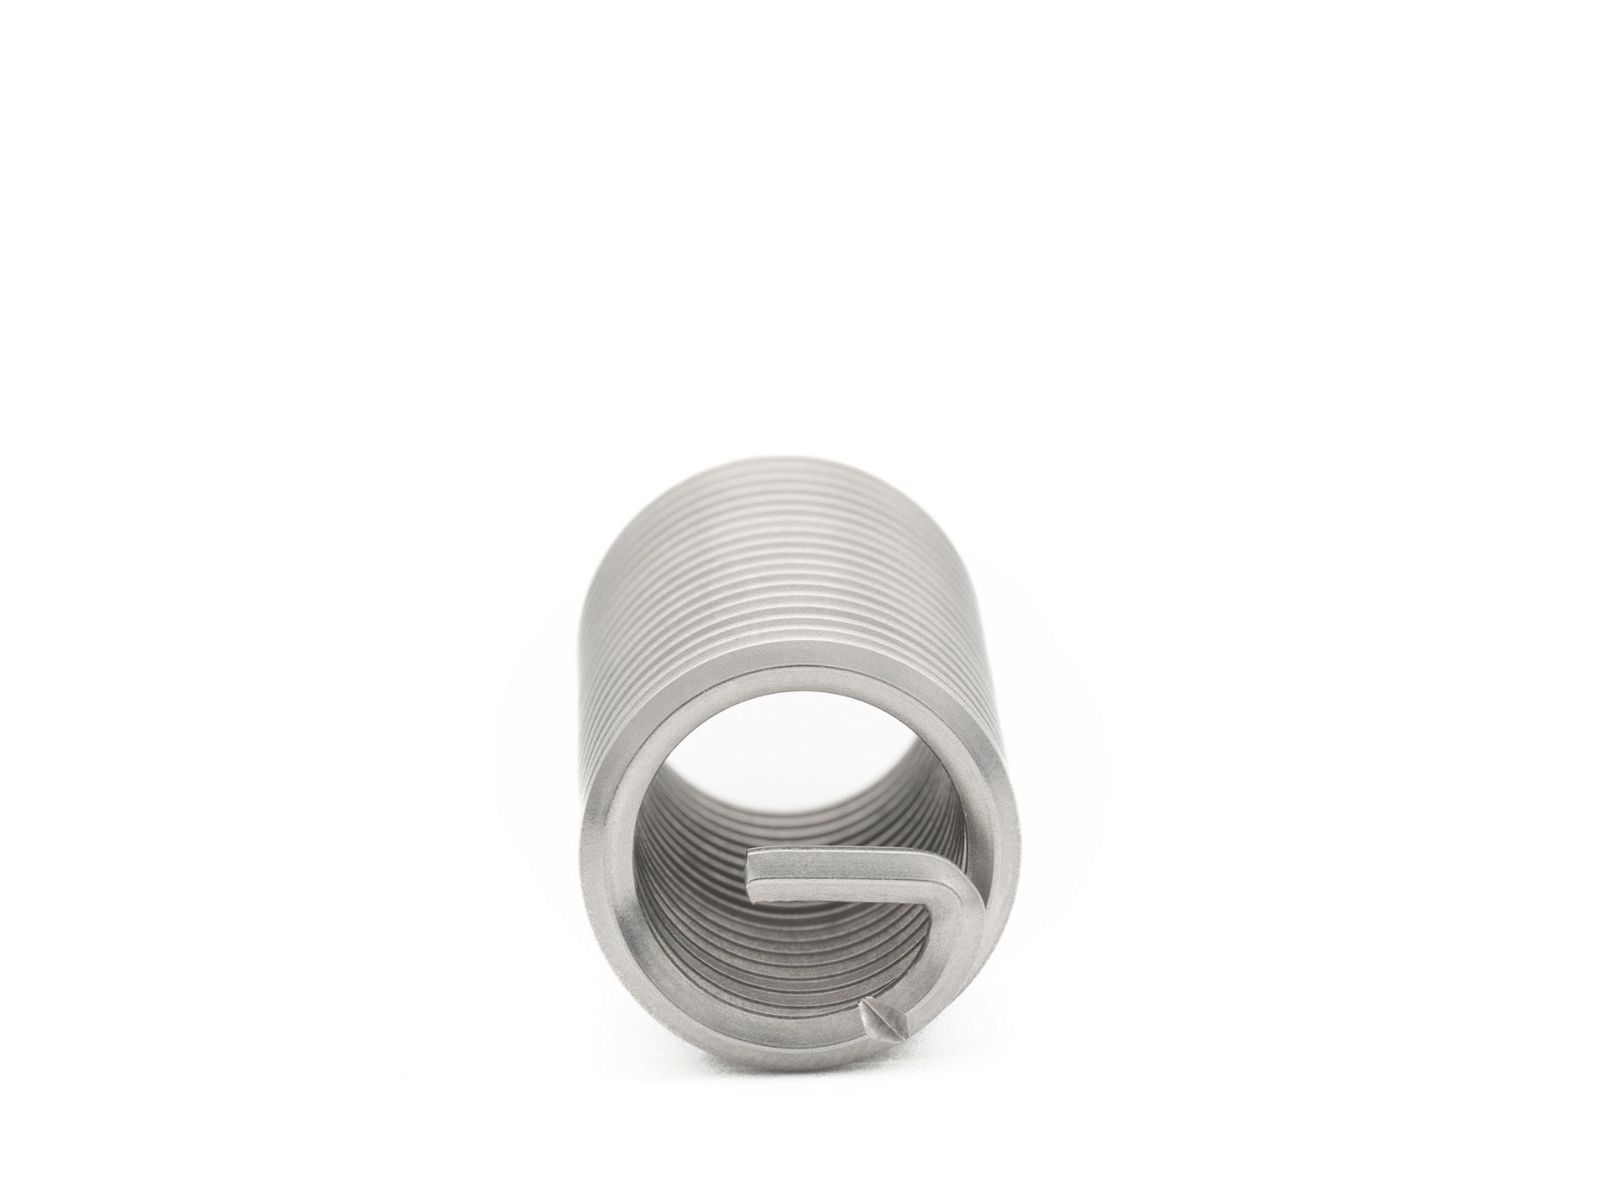 BaerCoil Wire Thread Inserts UNF 3/8 x 24 - 3.0 D (28.58 mm) - free running - 100 pcs.